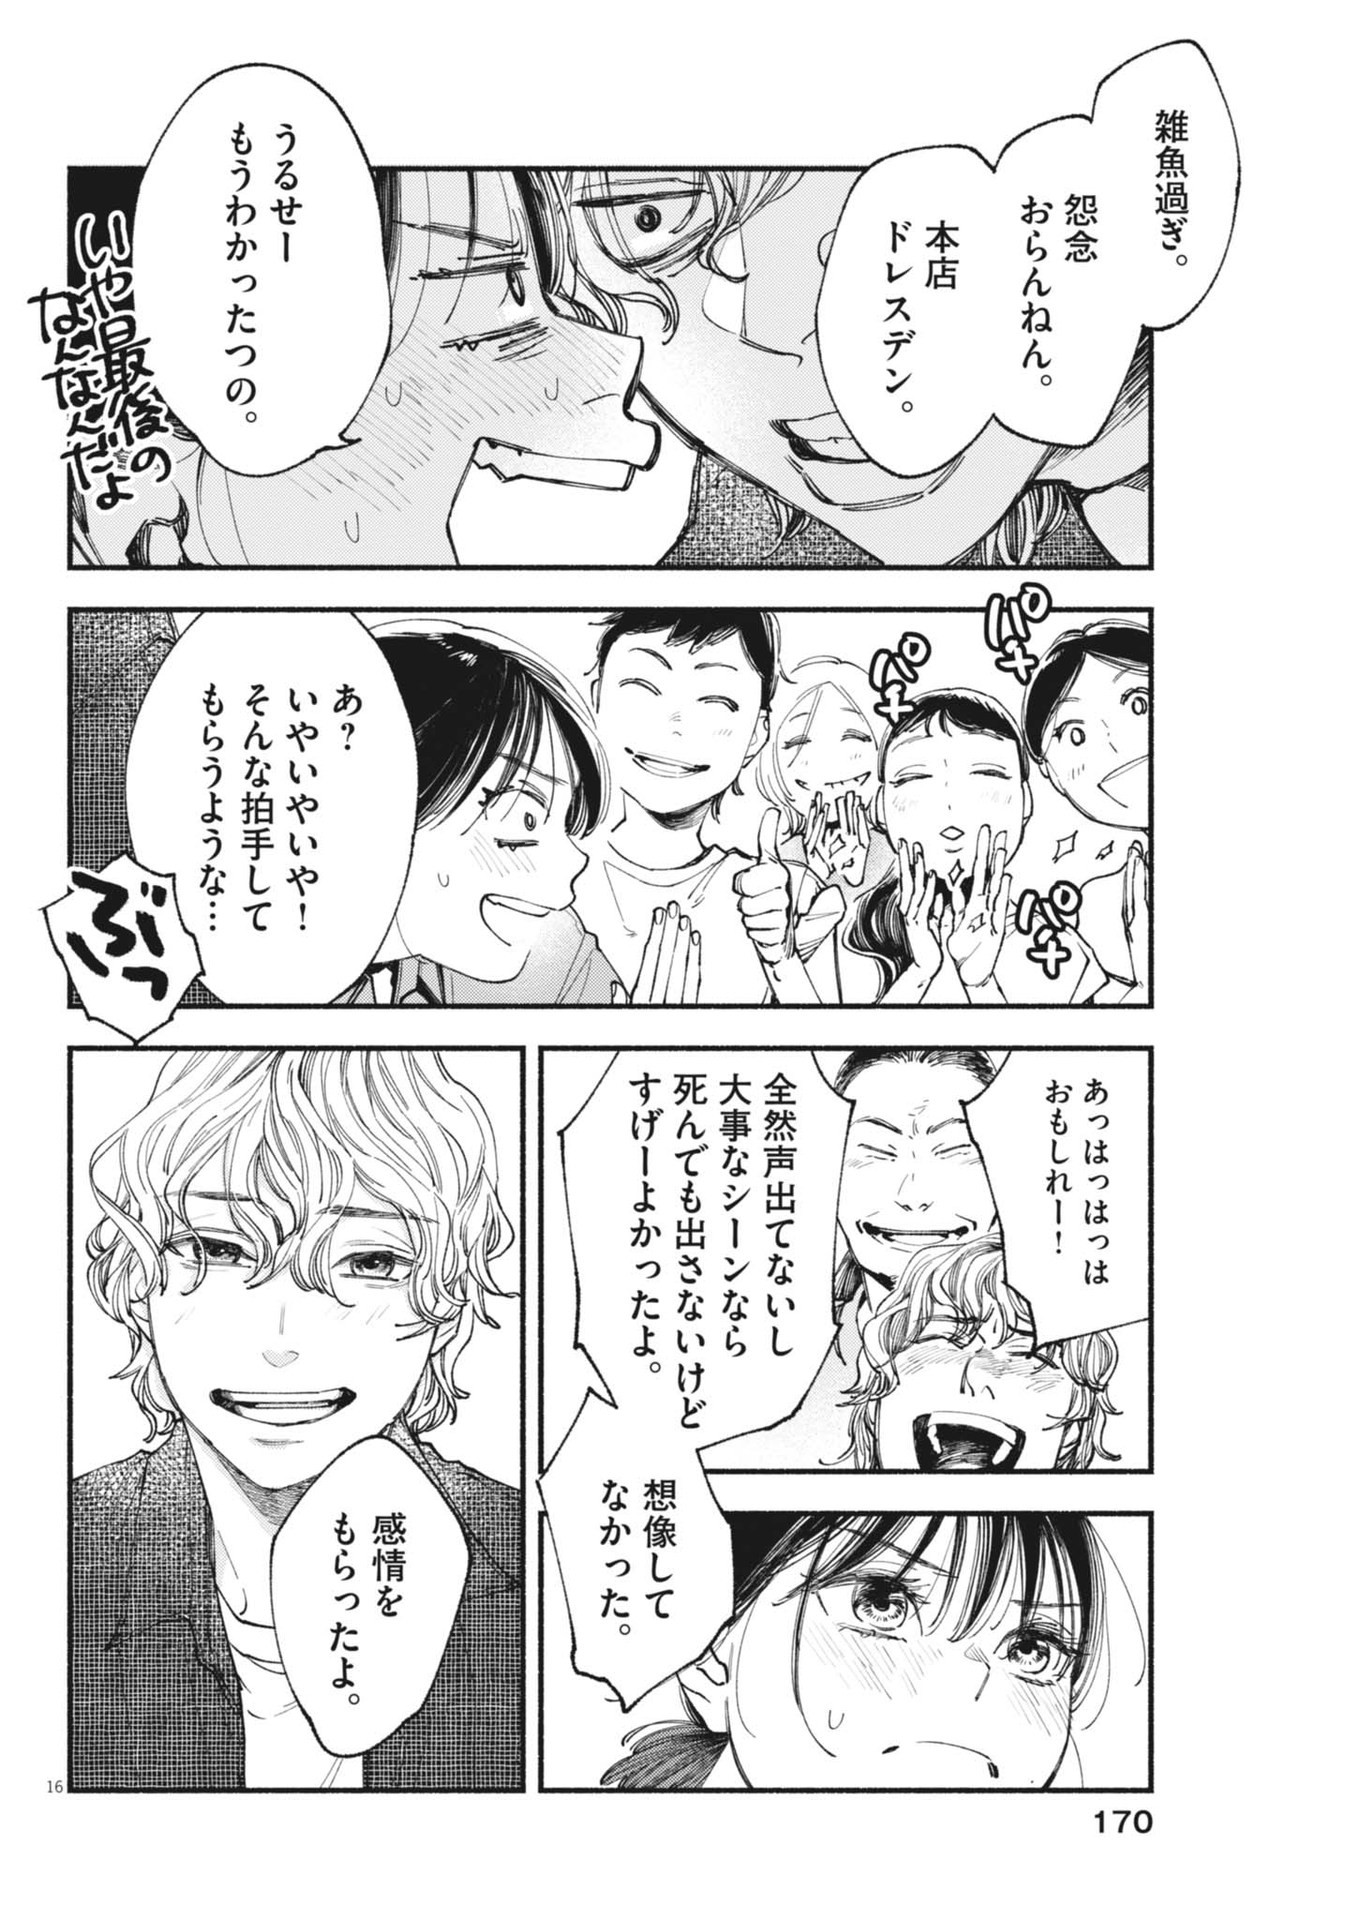 Konoyo wa Tatakau Kachi ga Aru  - Chapter 28 - Page 16